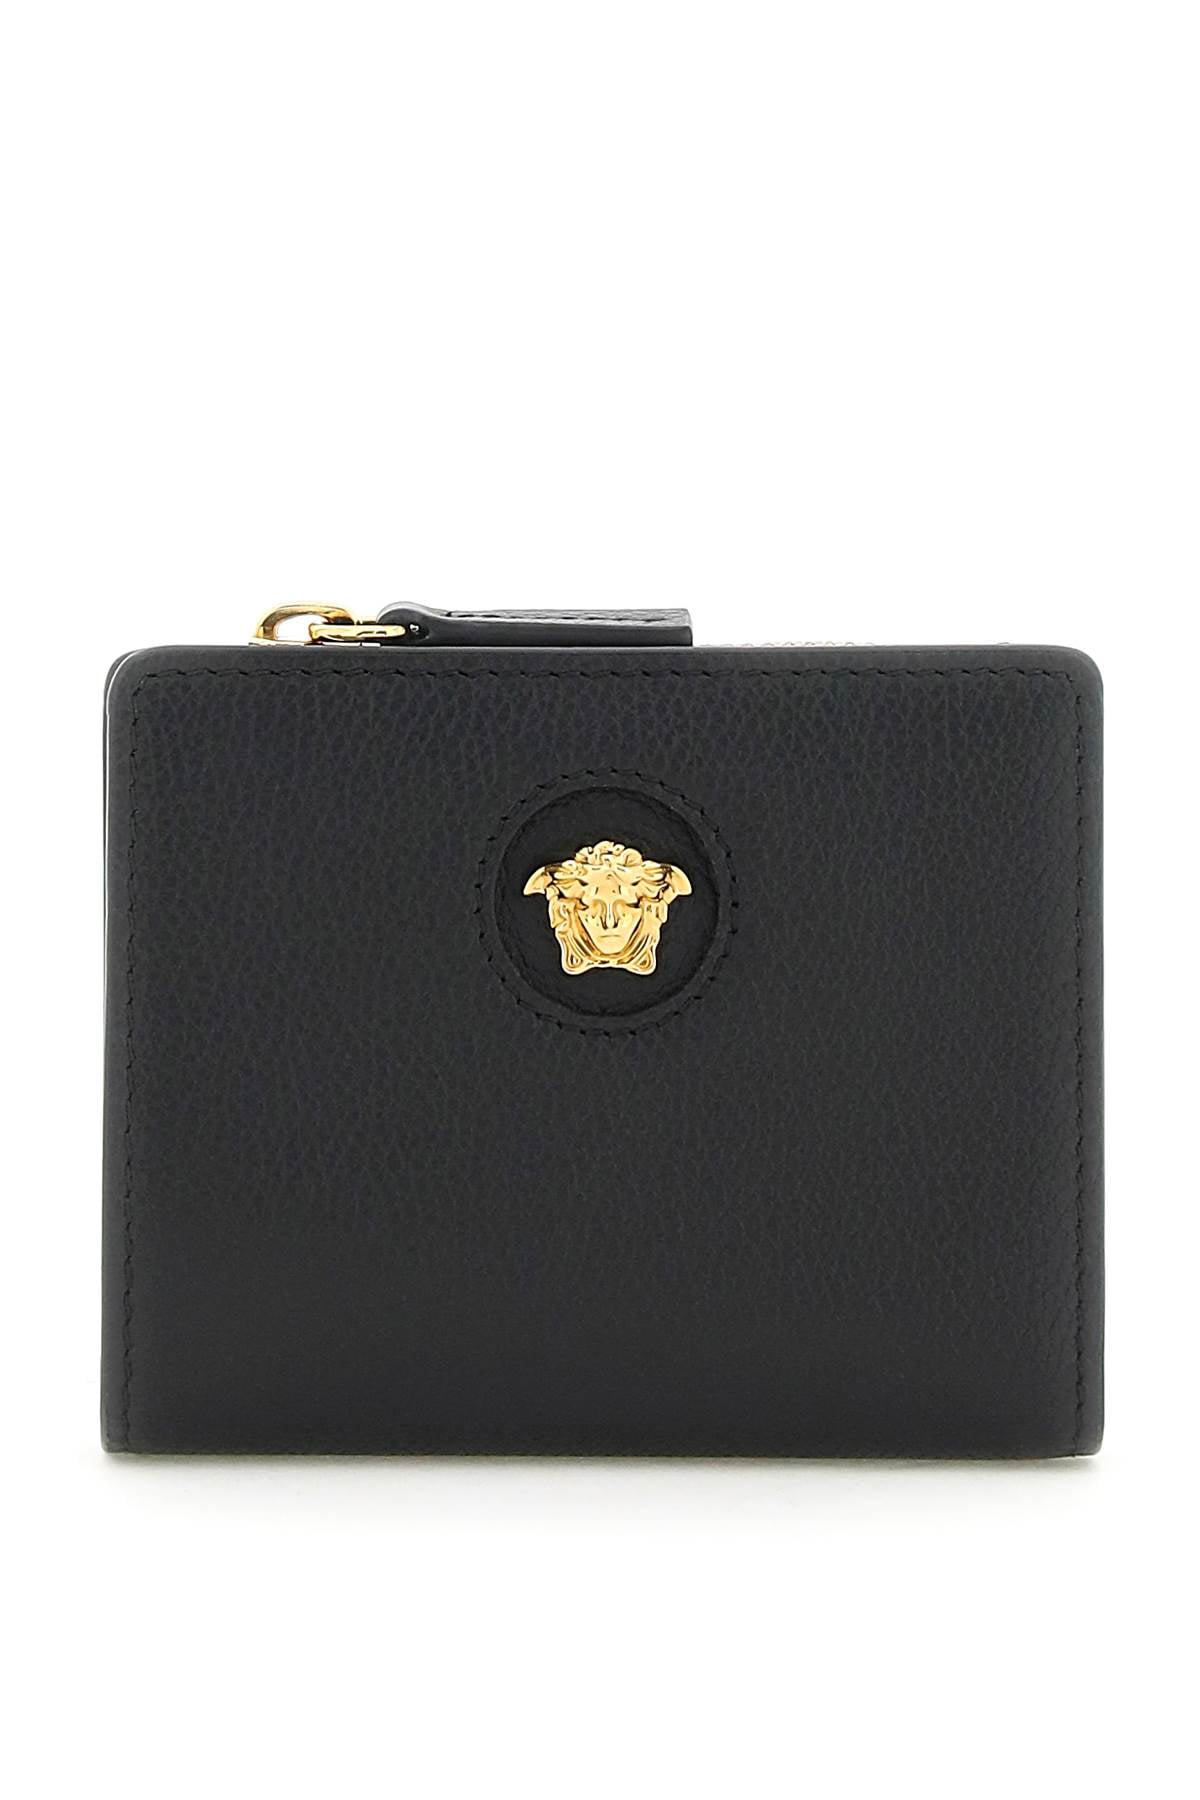 La Medusa' leather wallet Versace - IetpShops Guinea